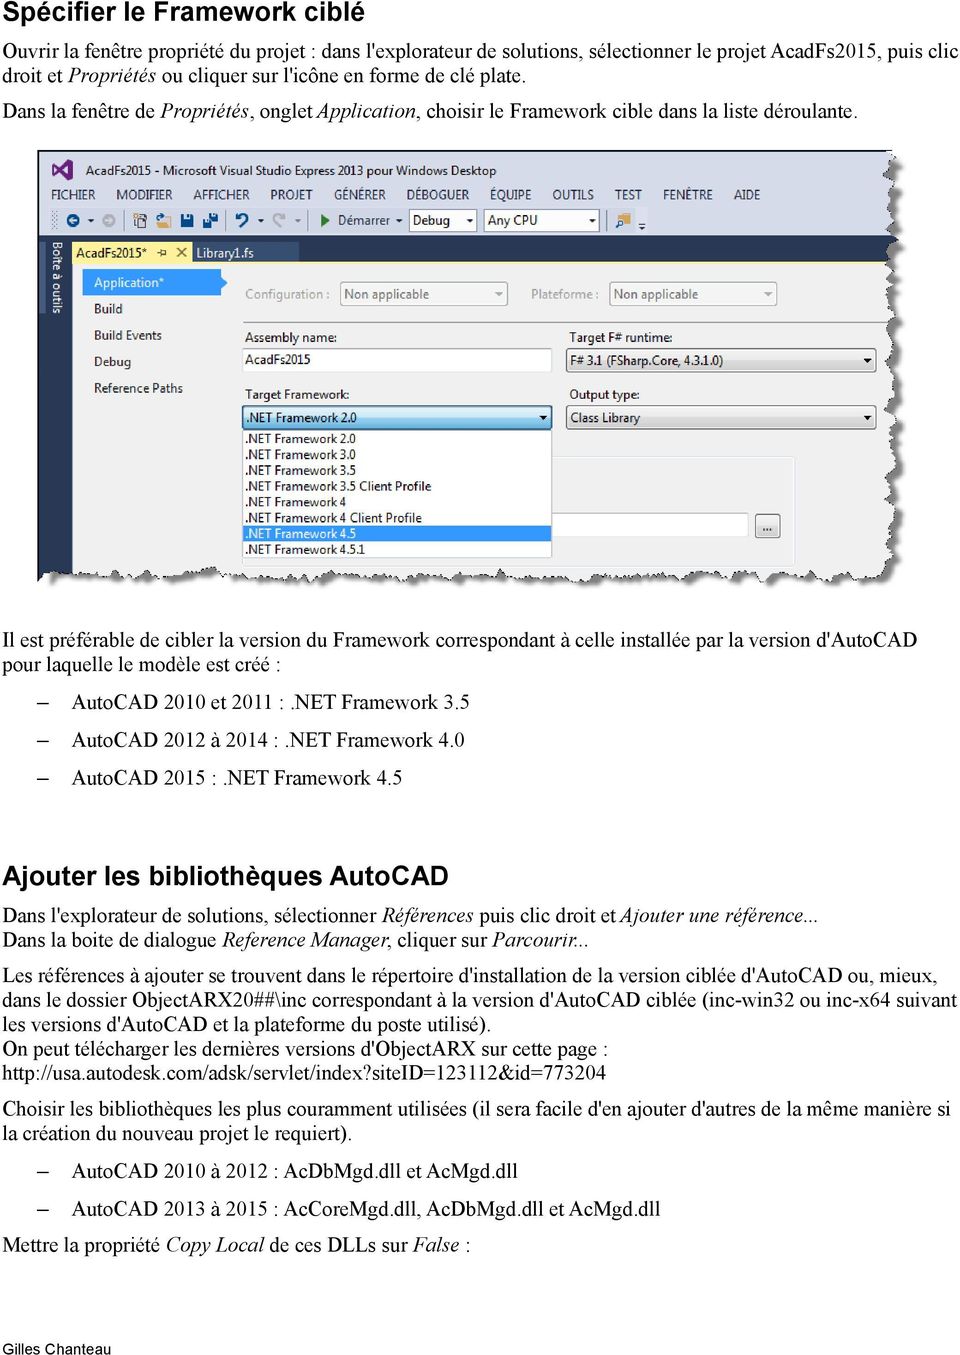 Il est préférable de cibler la version du Framework correspondant à celle installée par la version d'autocad pour laquelle le modèle est créé : AutoCAD 2010 et 2011 :.NET Framework 3.